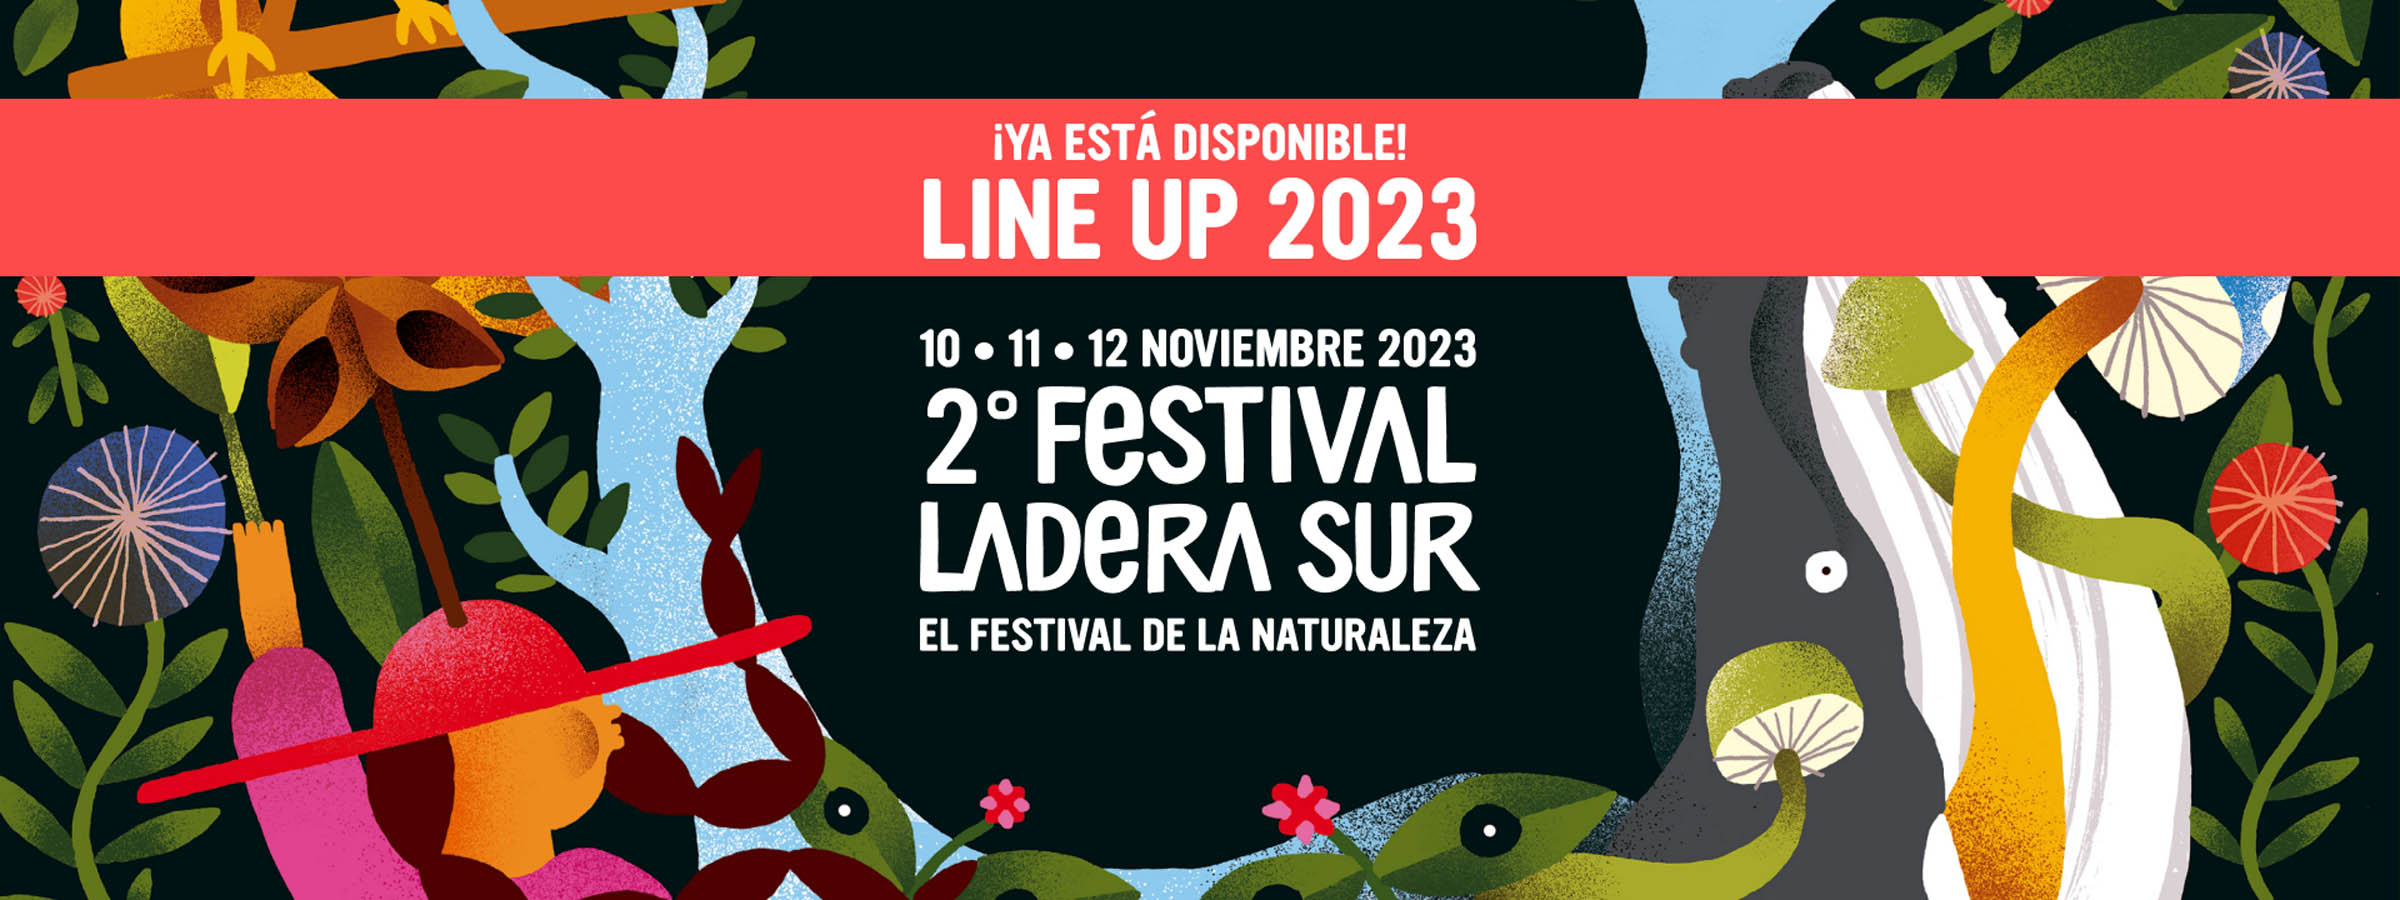 ¡Revísalo aquí! Ya está disponible el line up del Festival Ladera Sur 2023